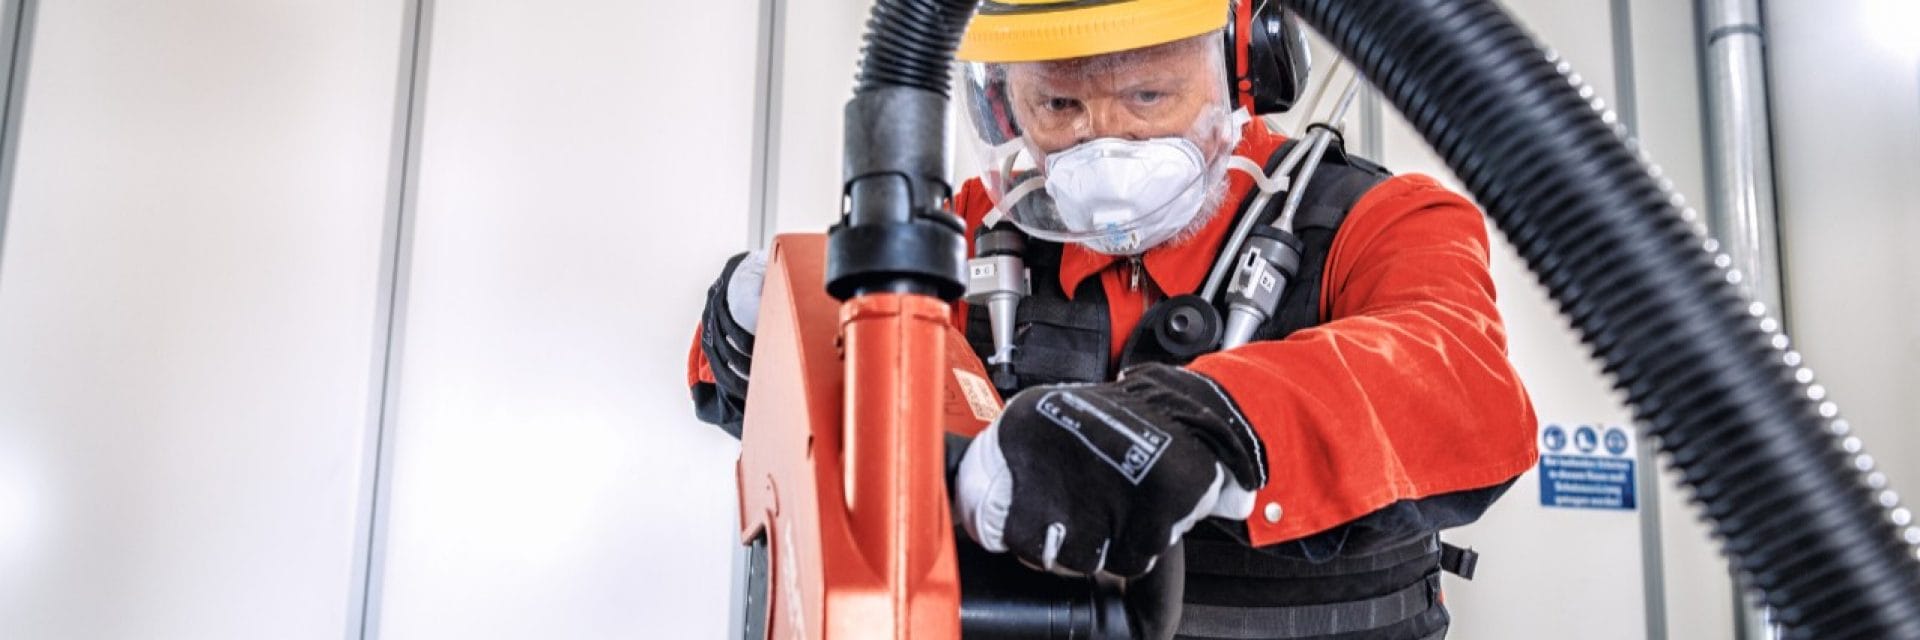 Hilti-stofexpert die machines voor het snijden test in het Dust Research Center in Duitsland